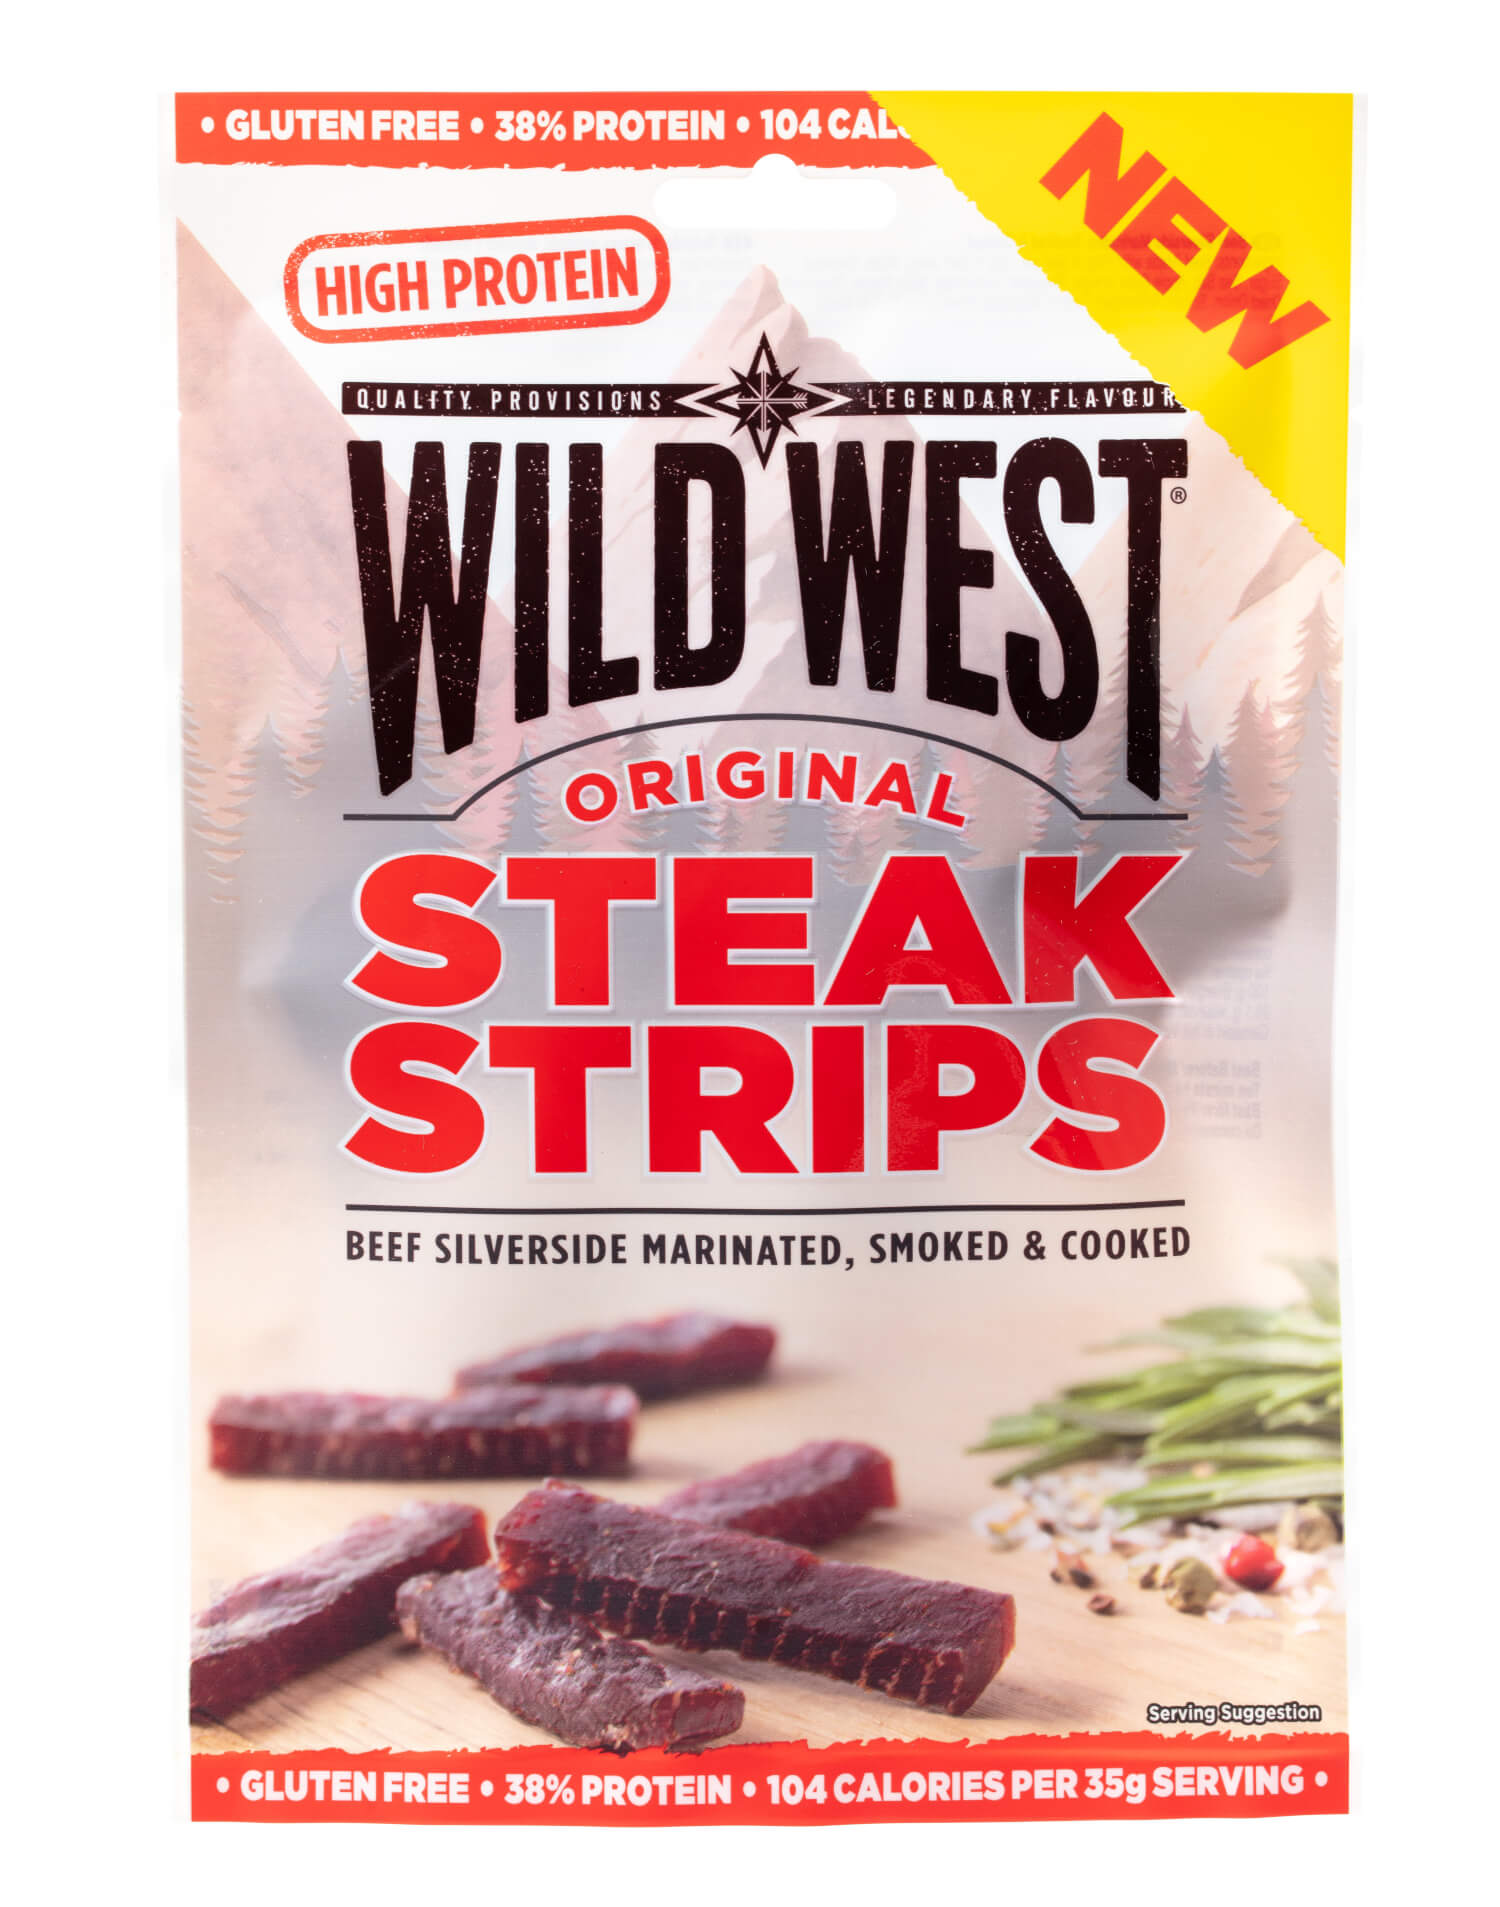 Wild West Steak Strips Original